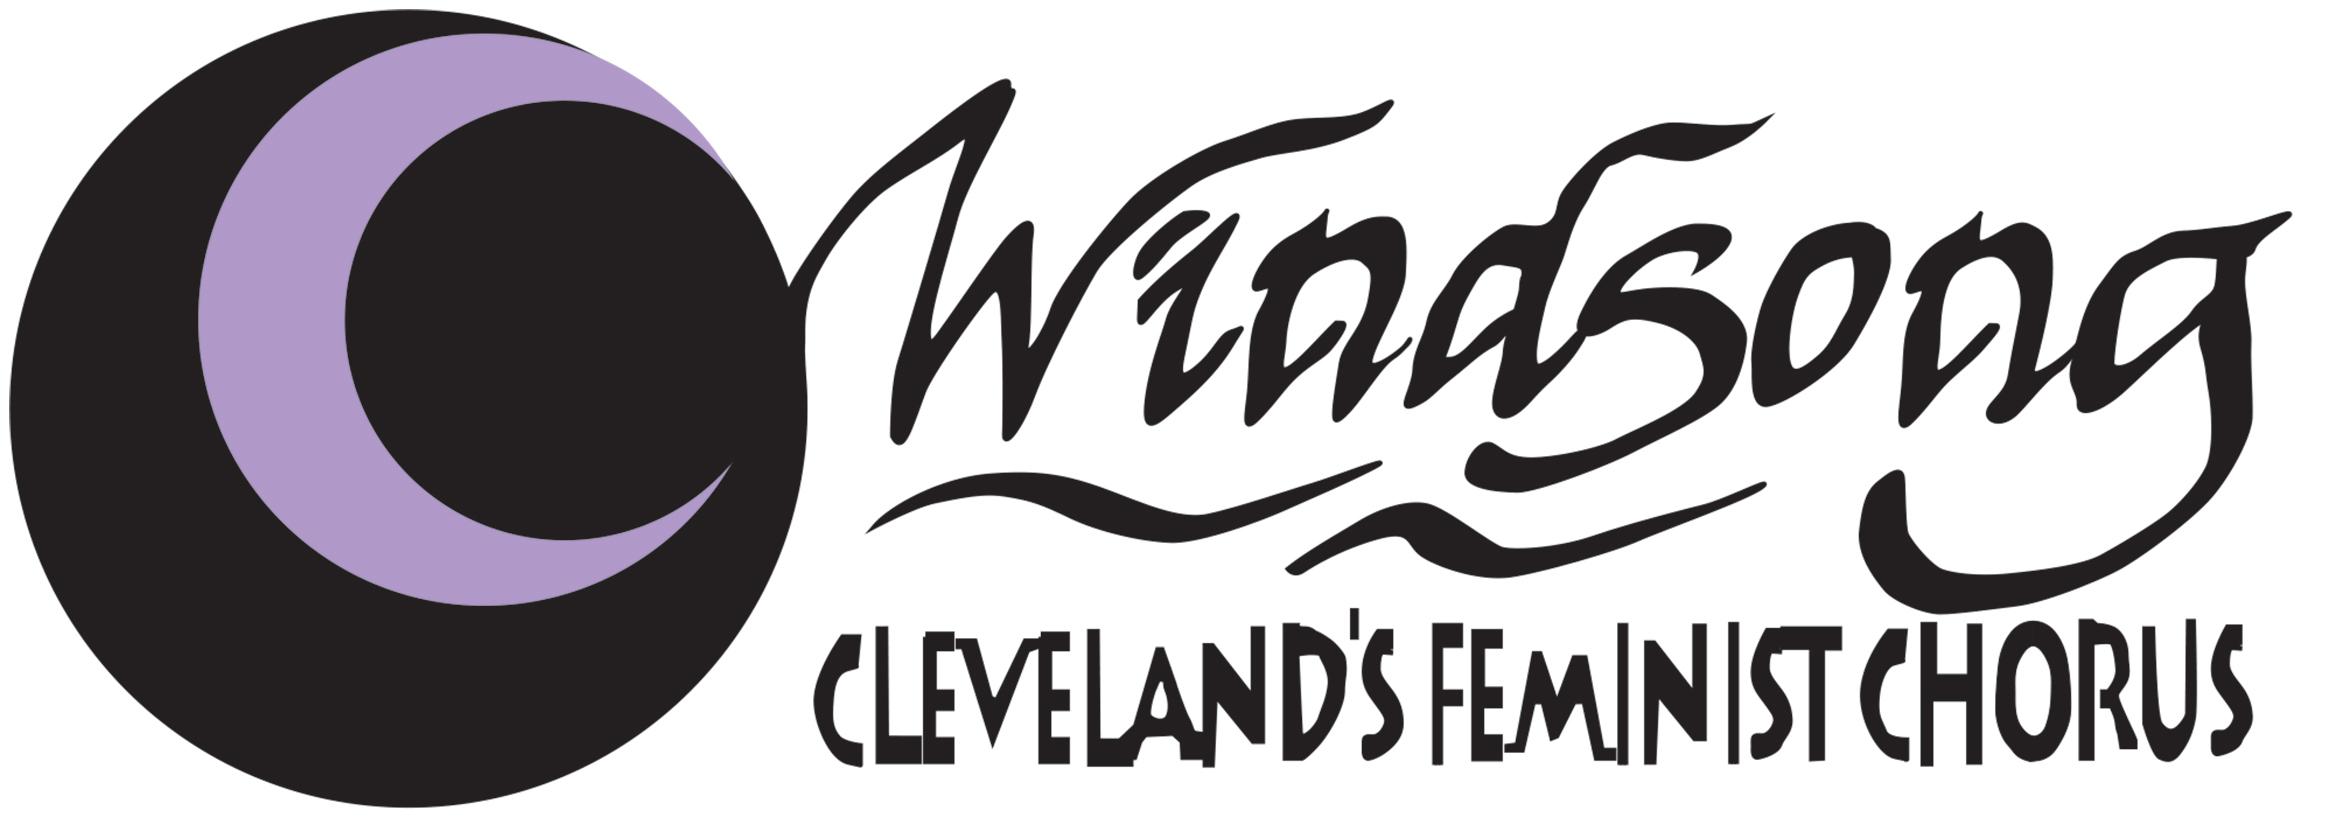 Windsong, Cleveland's Feminist Chorus